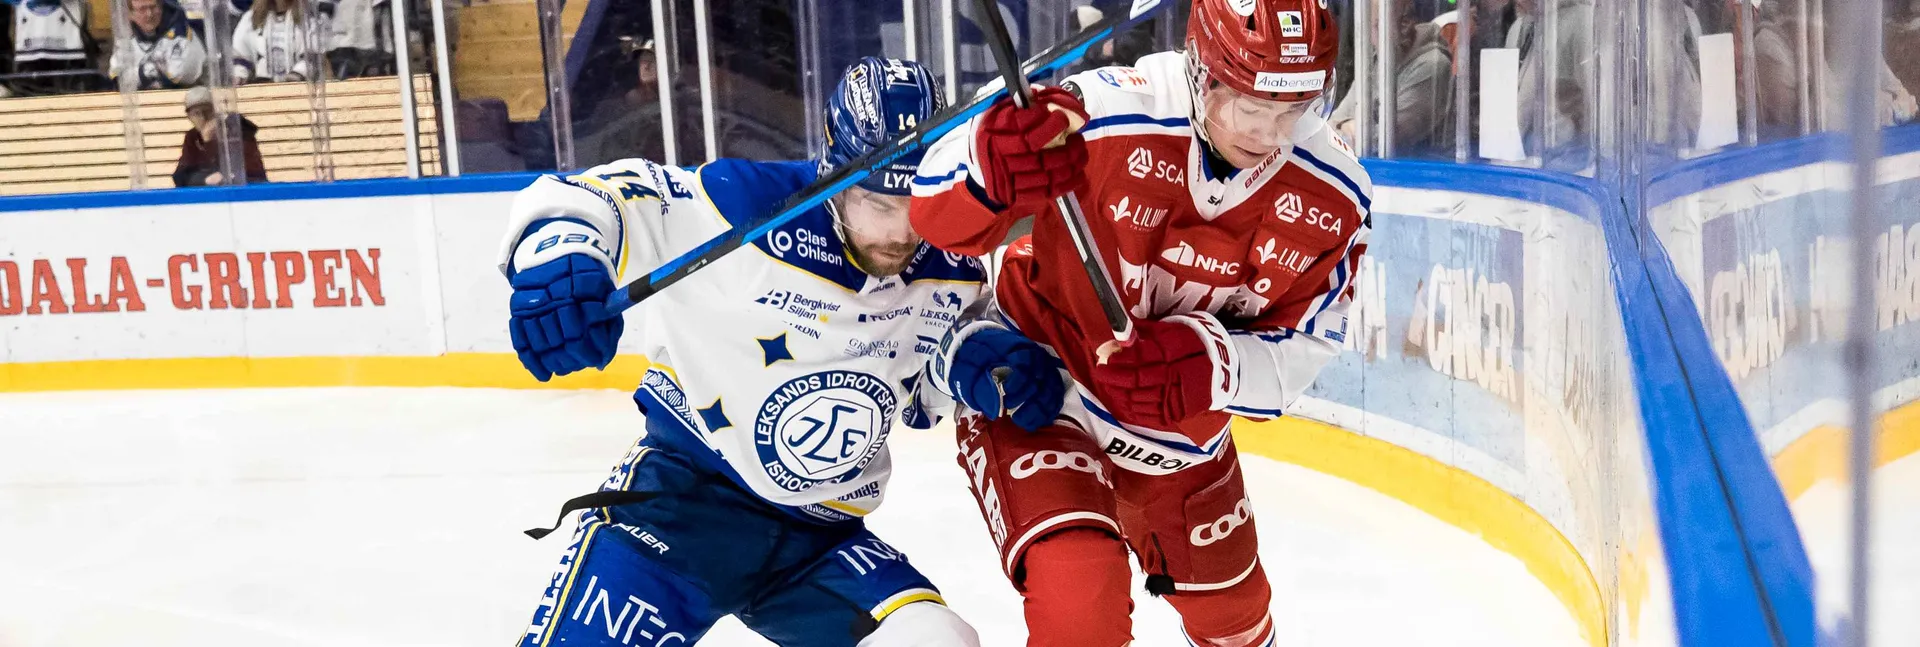 Ishockeymatch mellan Leksand och Timrå i SHL